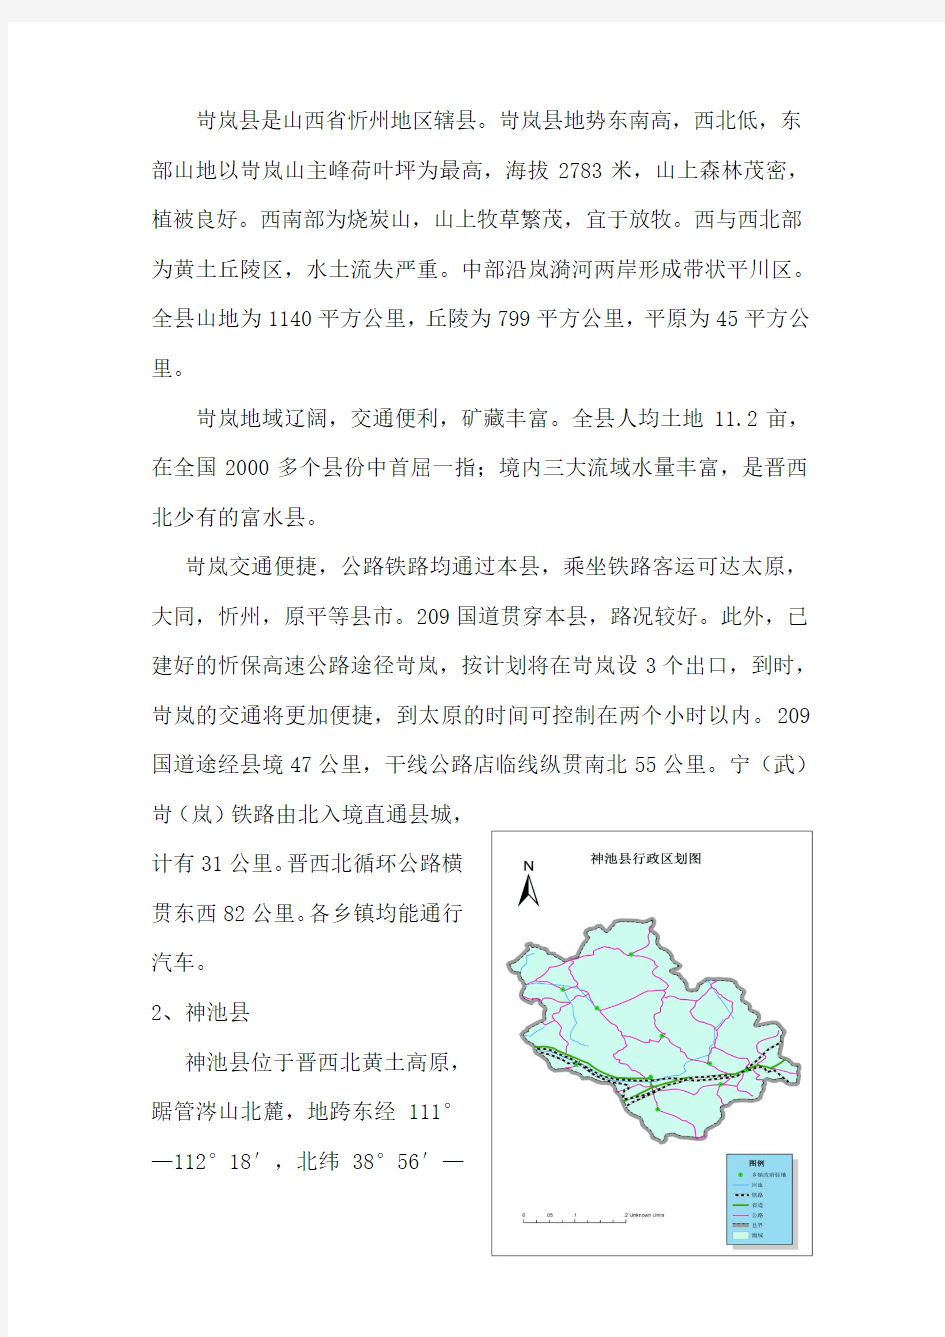 县域经济发展状况比较分析(赵子龙12)